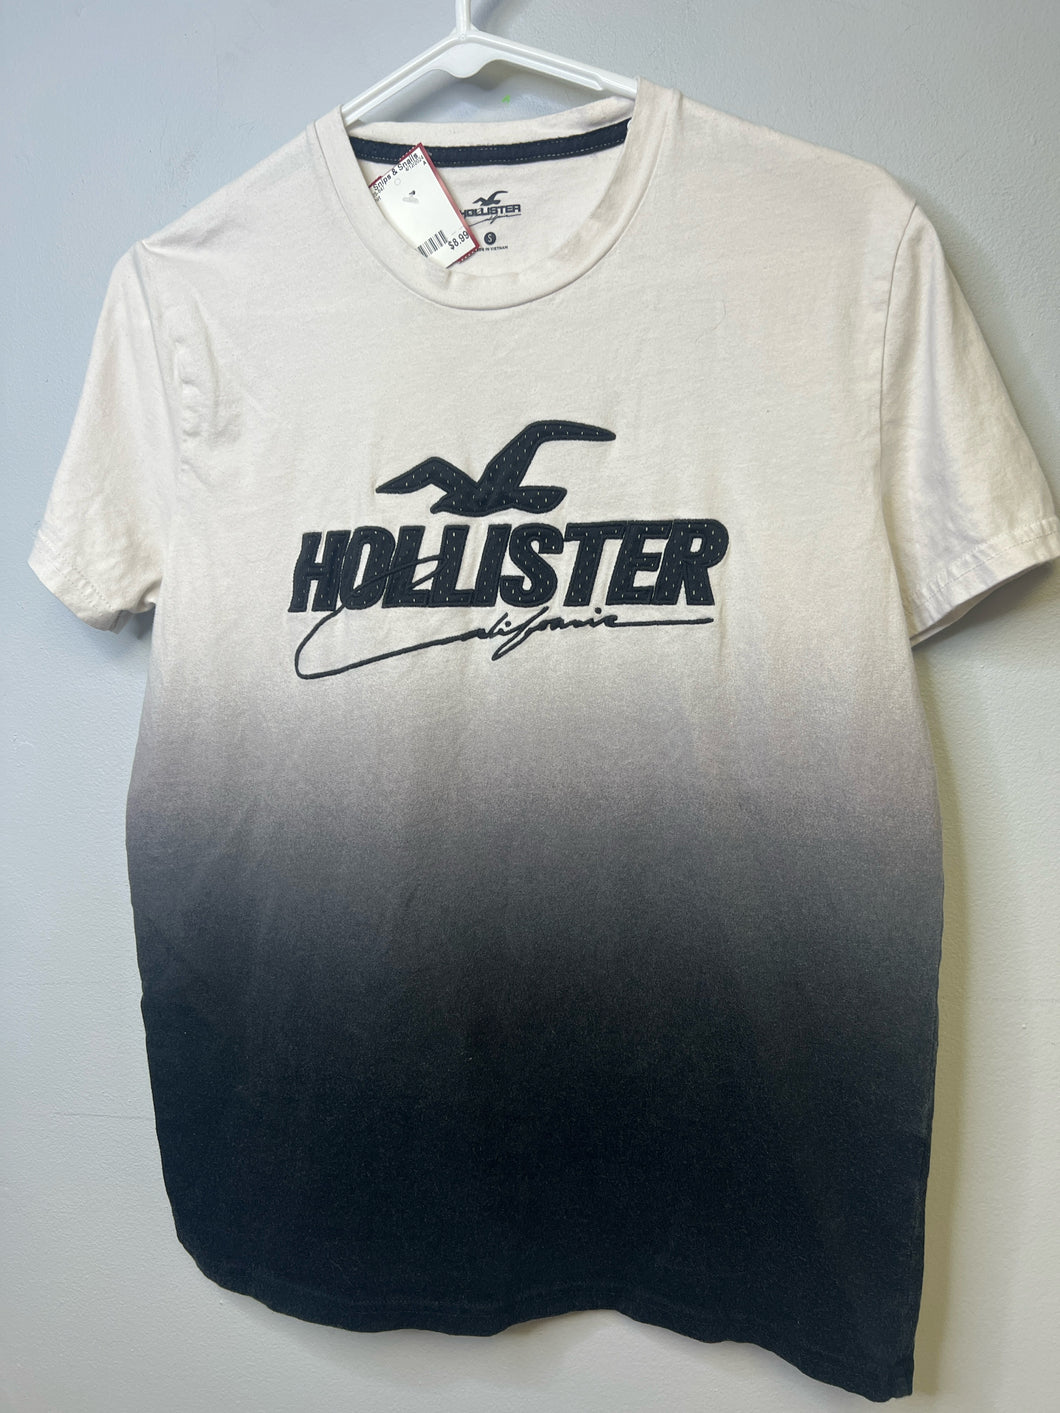 Mens Hollister Size S shirt